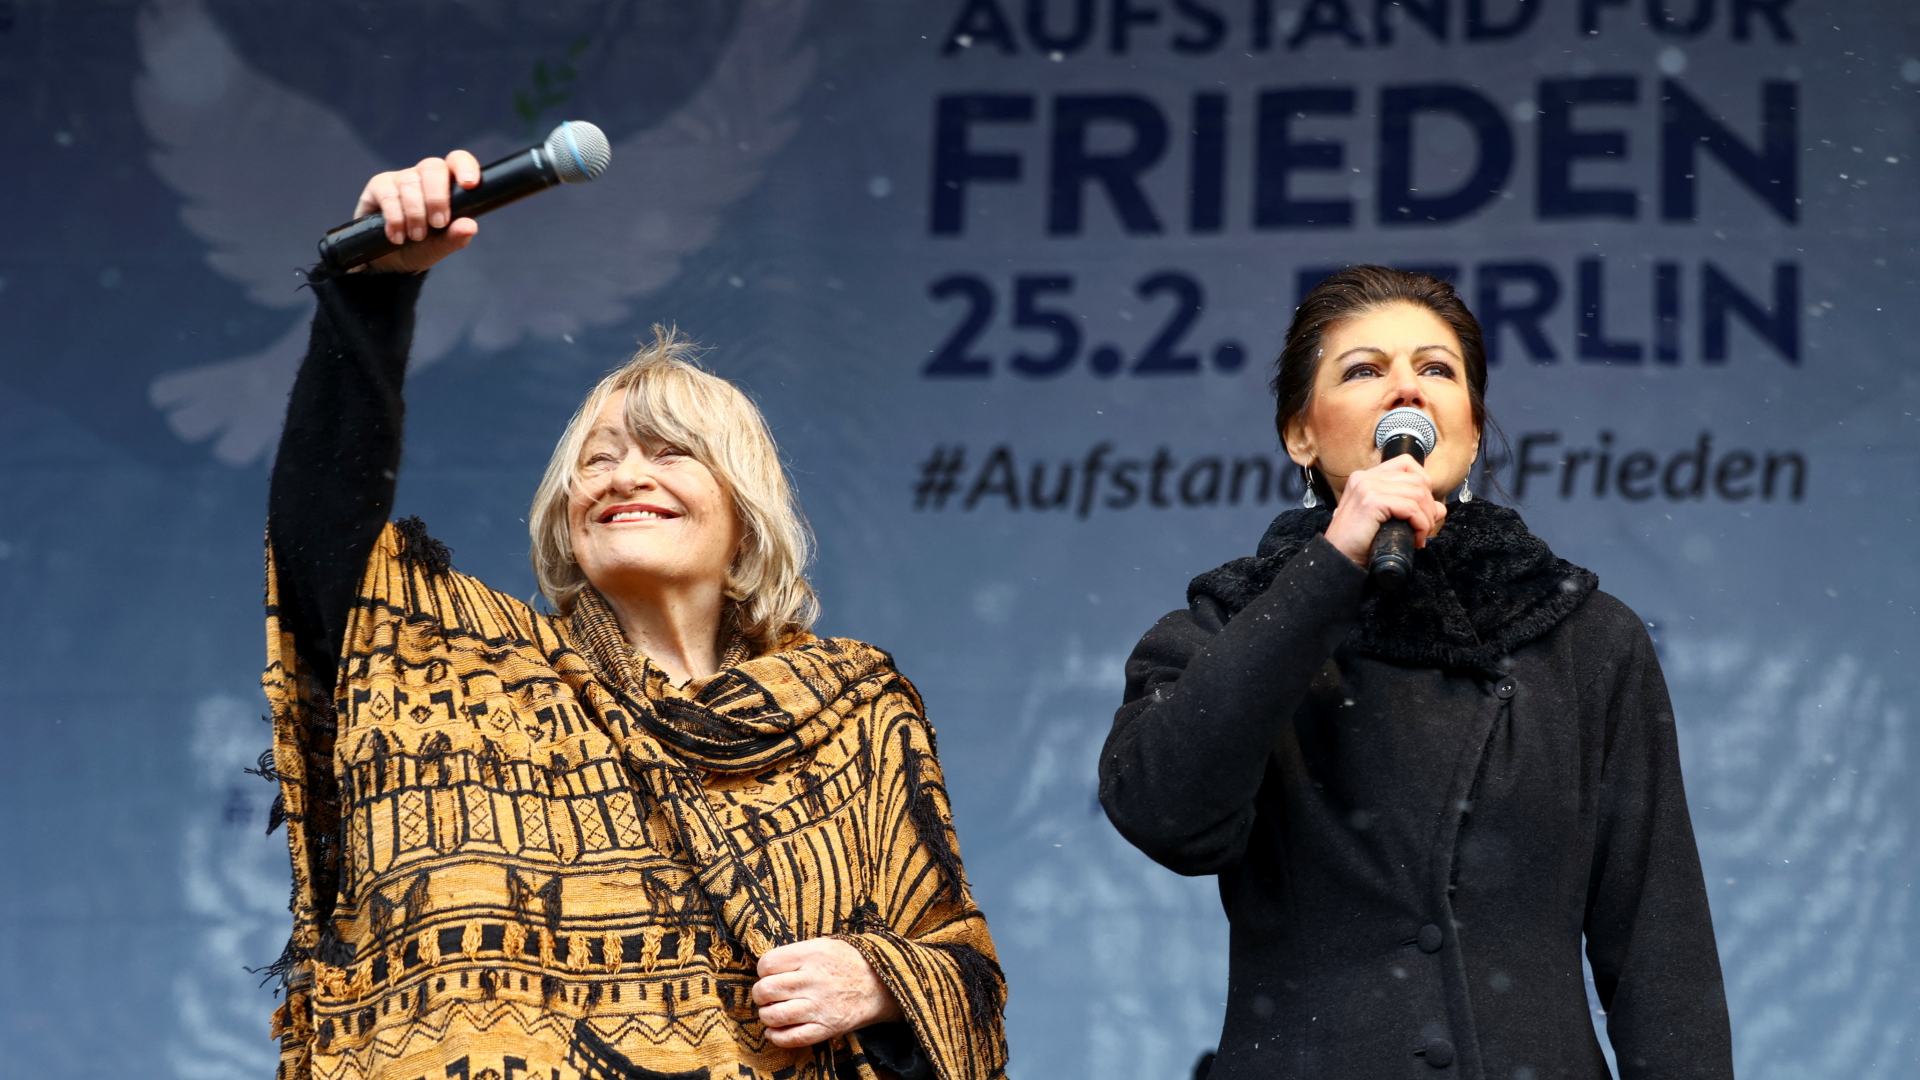 Sahra Wagenknecht (r.) und Alice Schwarzer auf einer "Friedensdemo" am 25. Februar 2023 in Berlin. | REUTERS